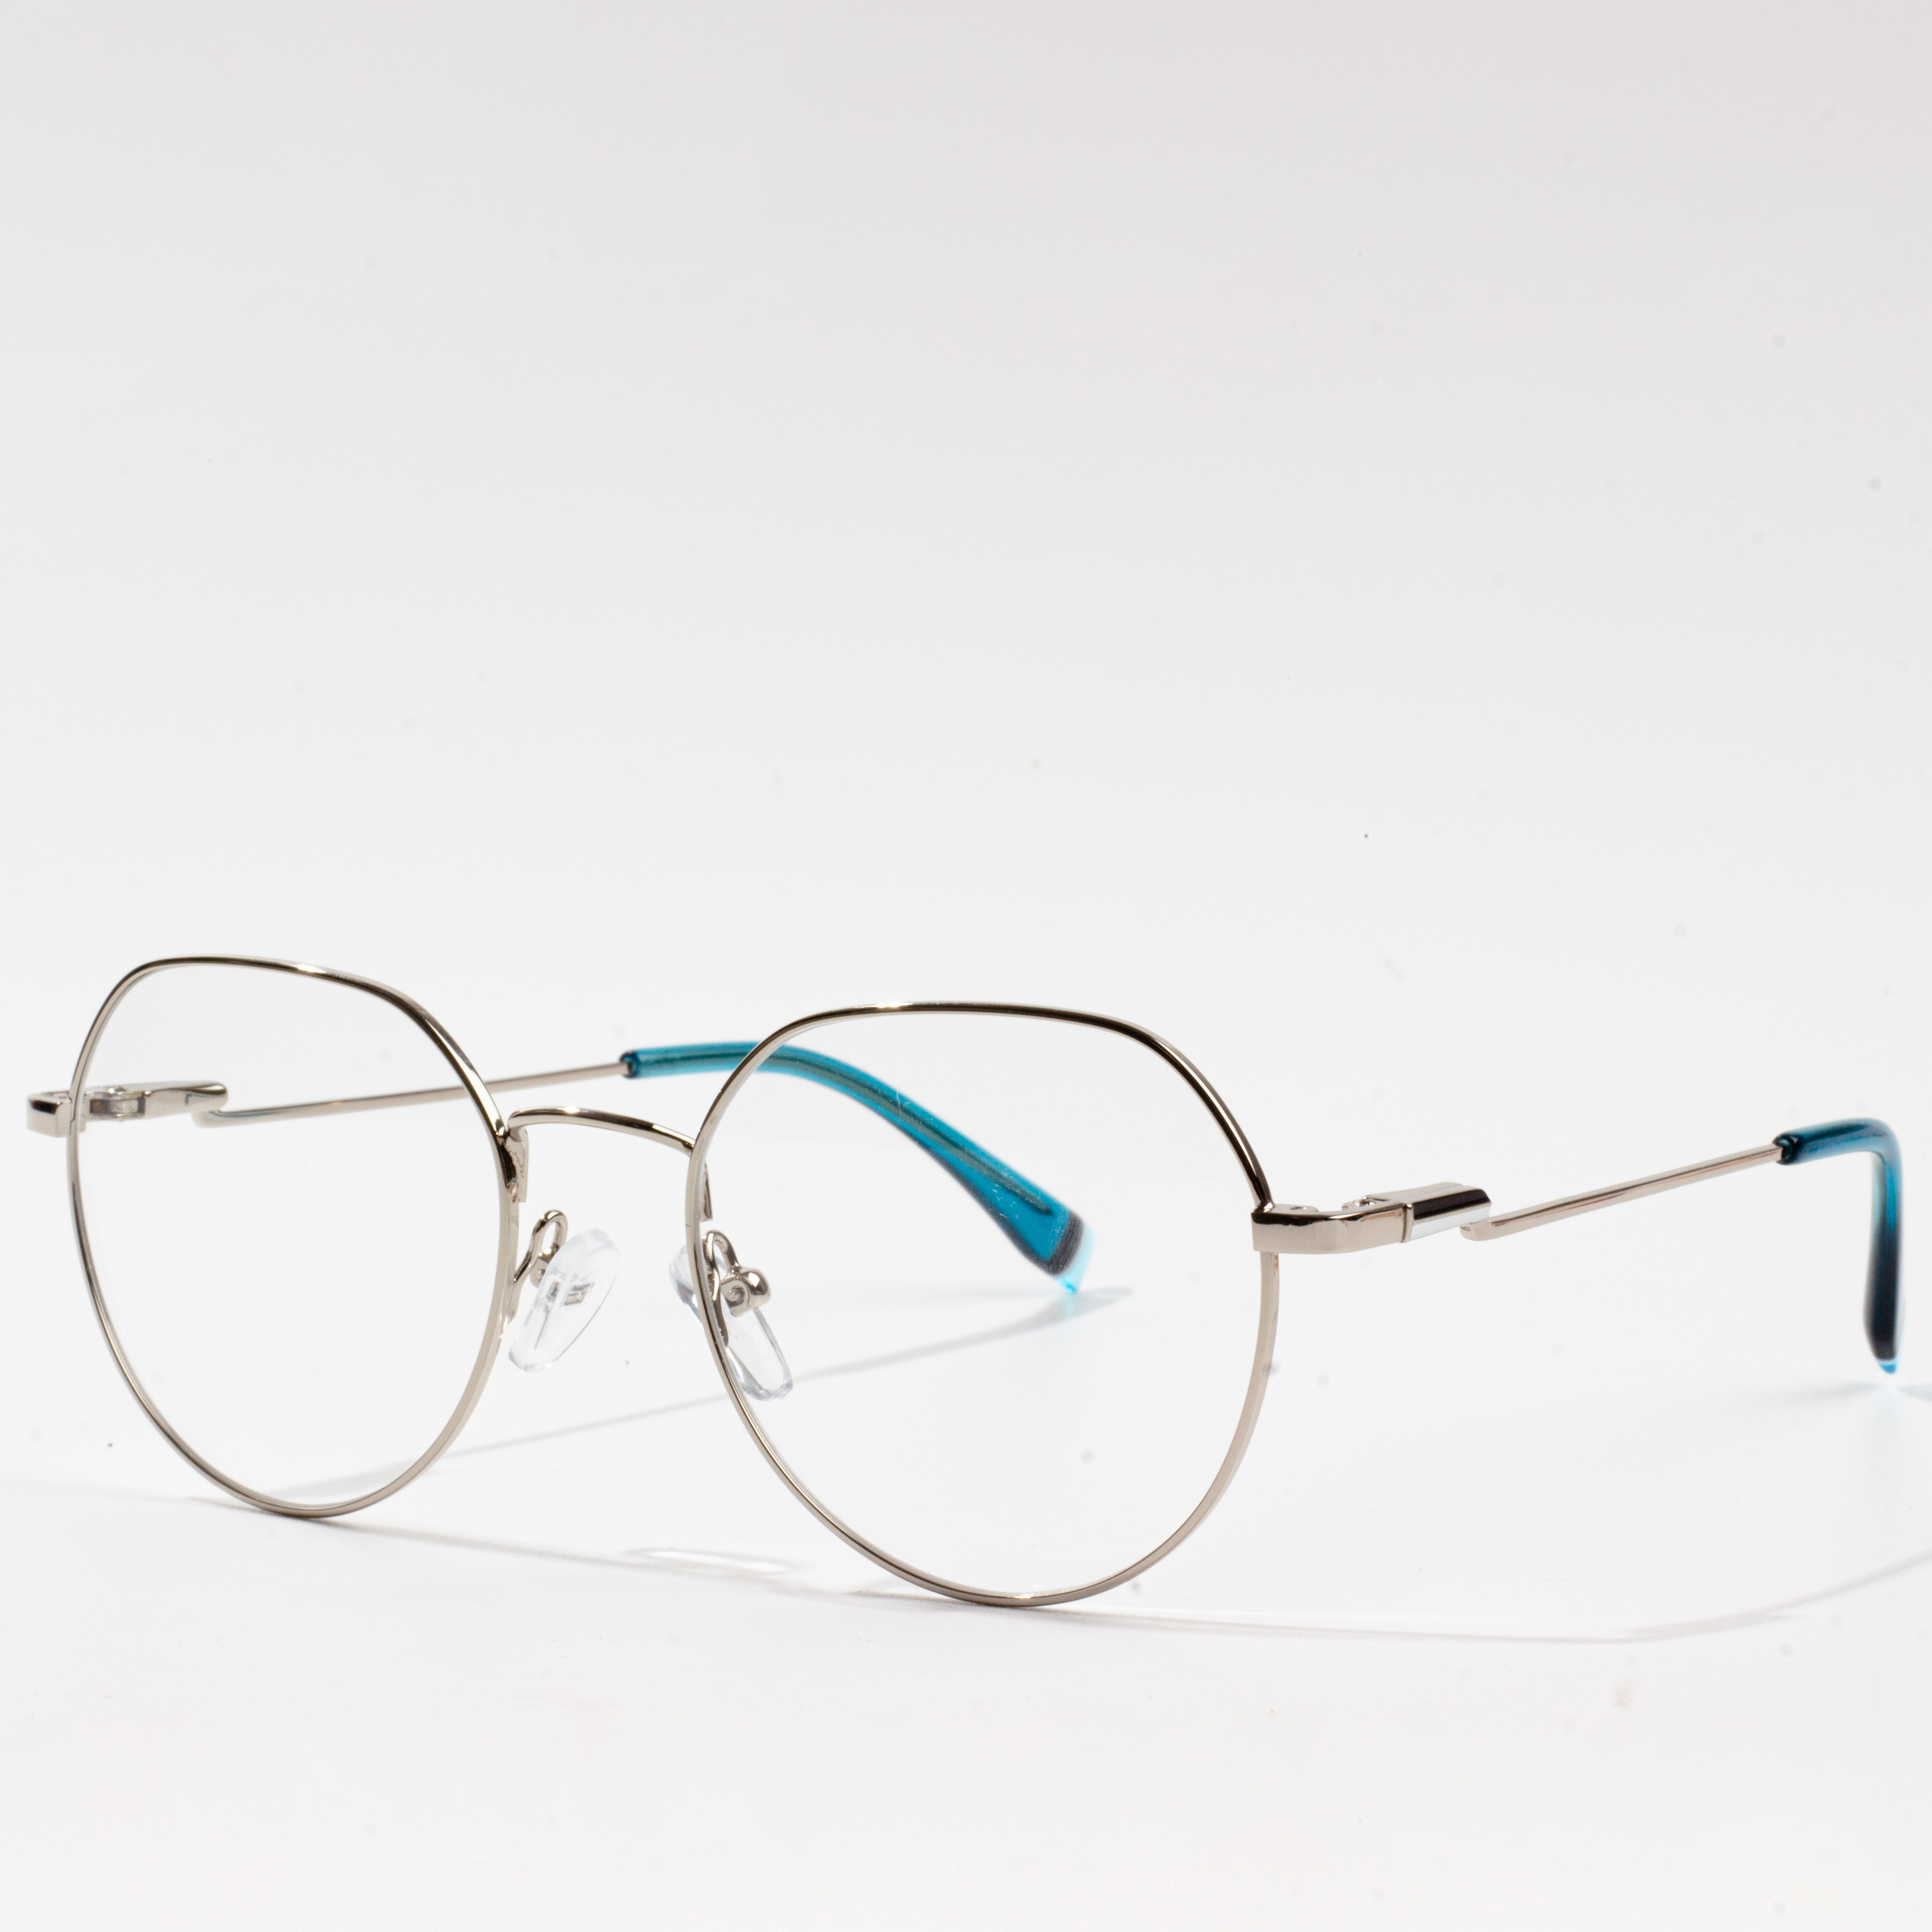 सबसे लोकप्रिय चश्मा फ्रेम